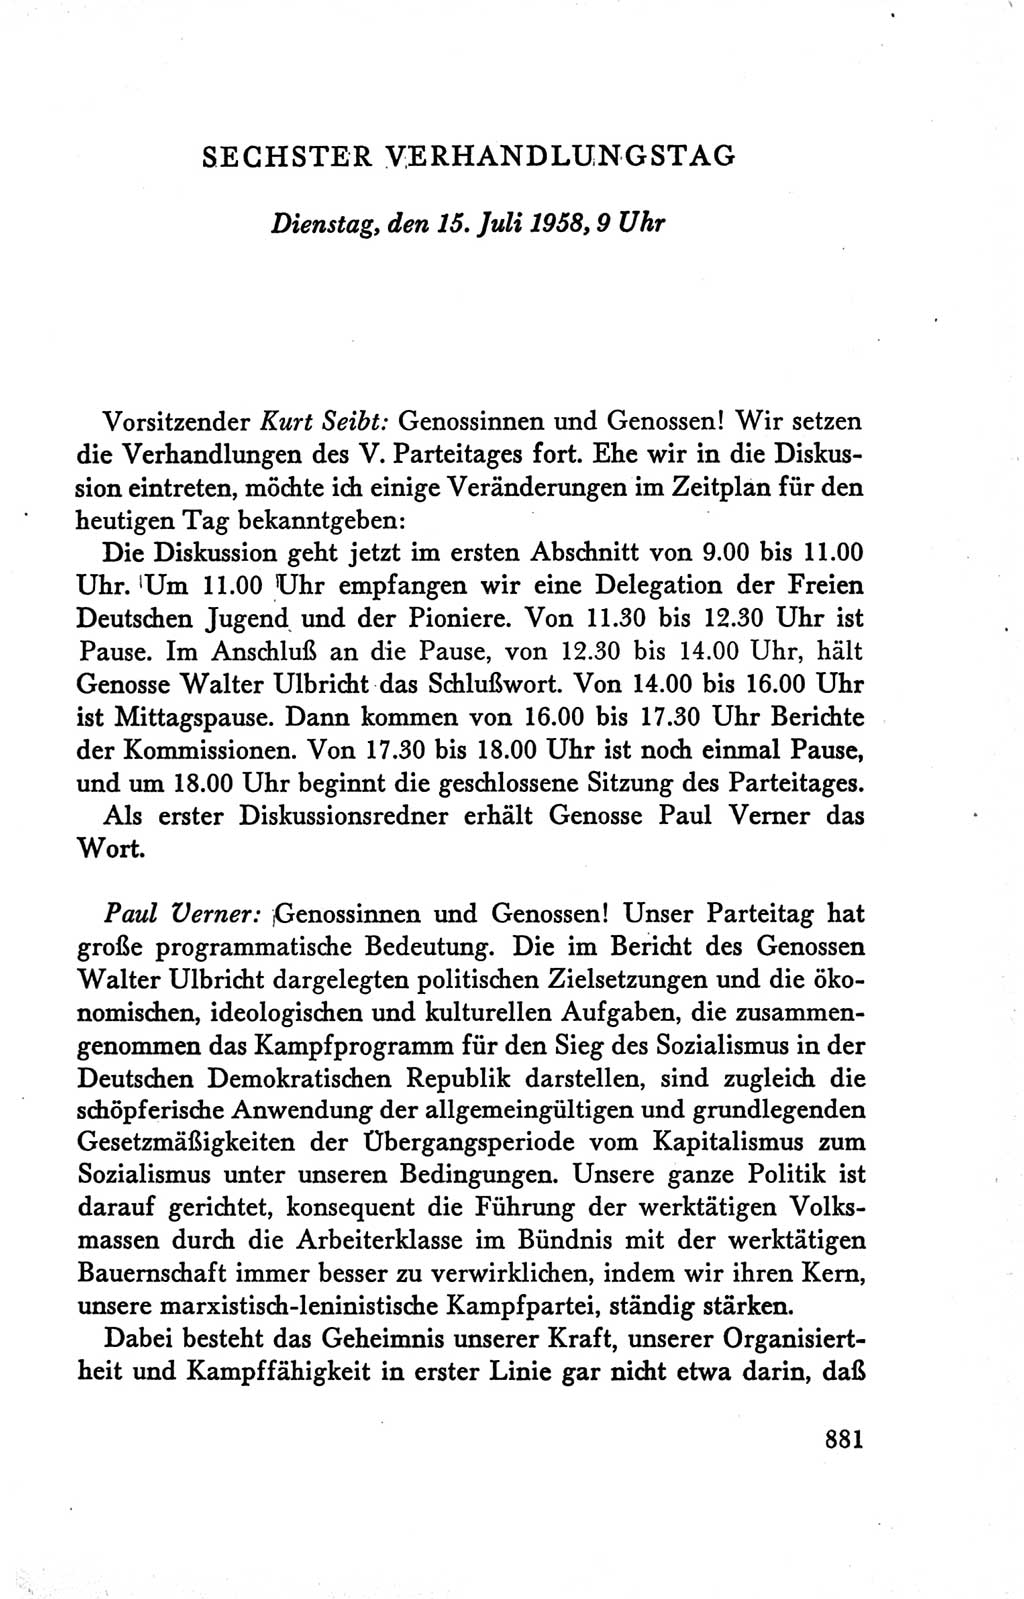 Protokoll der Verhandlungen des Ⅴ. Parteitages der Sozialistischen Einheitspartei Deutschlands (SED) [Deutsche Demokratische Republik (DDR)] 1958, Seite 881